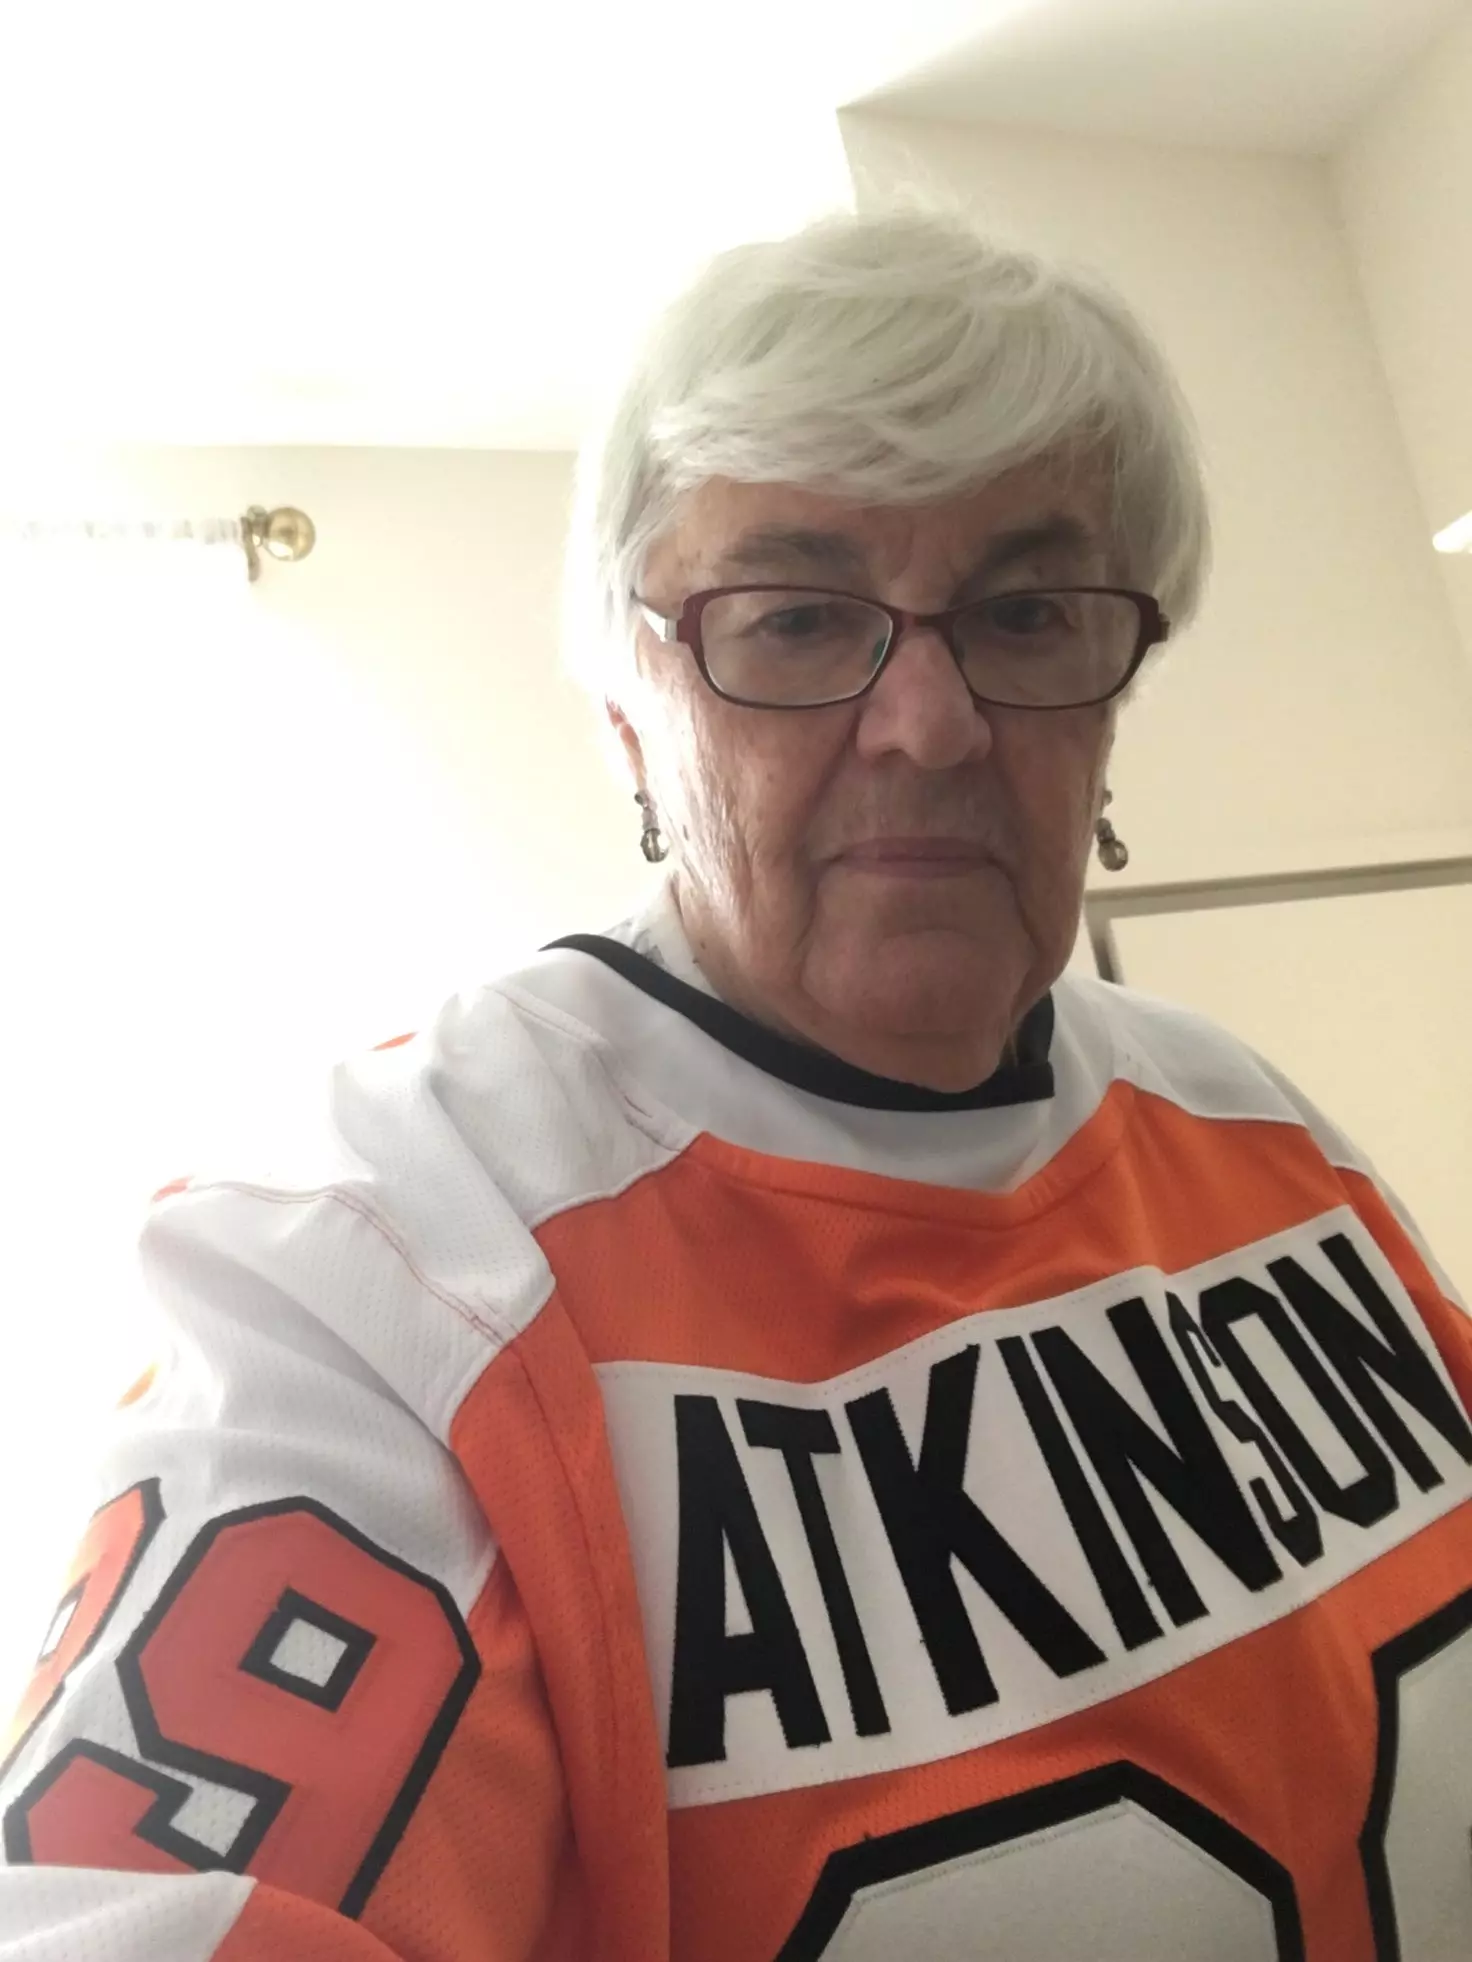 Older woman wearing Philadelphia Flyers jersey